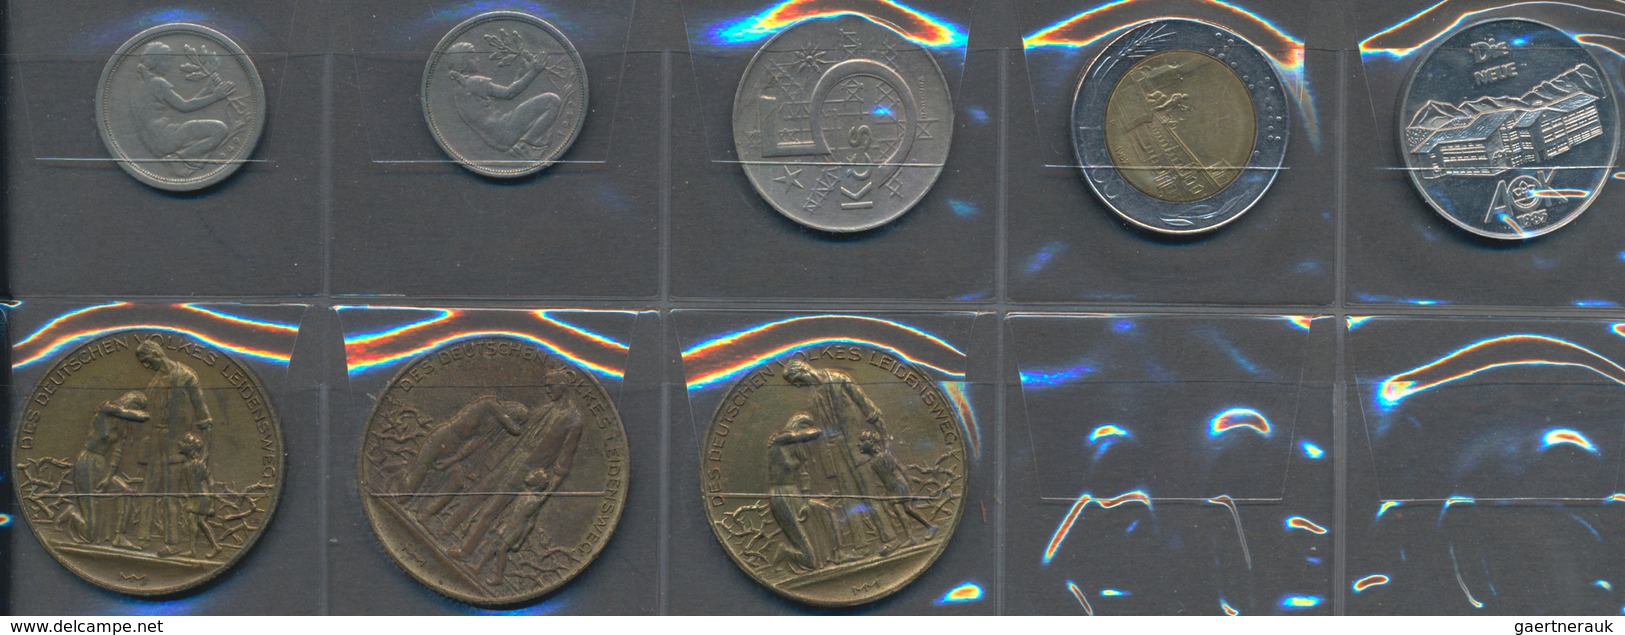 Alle Welt: Kleine Sammlung an diversen Silbermünzen (CHF, NLG, 1 OZ) und Medaillen (Schongau, Peitin